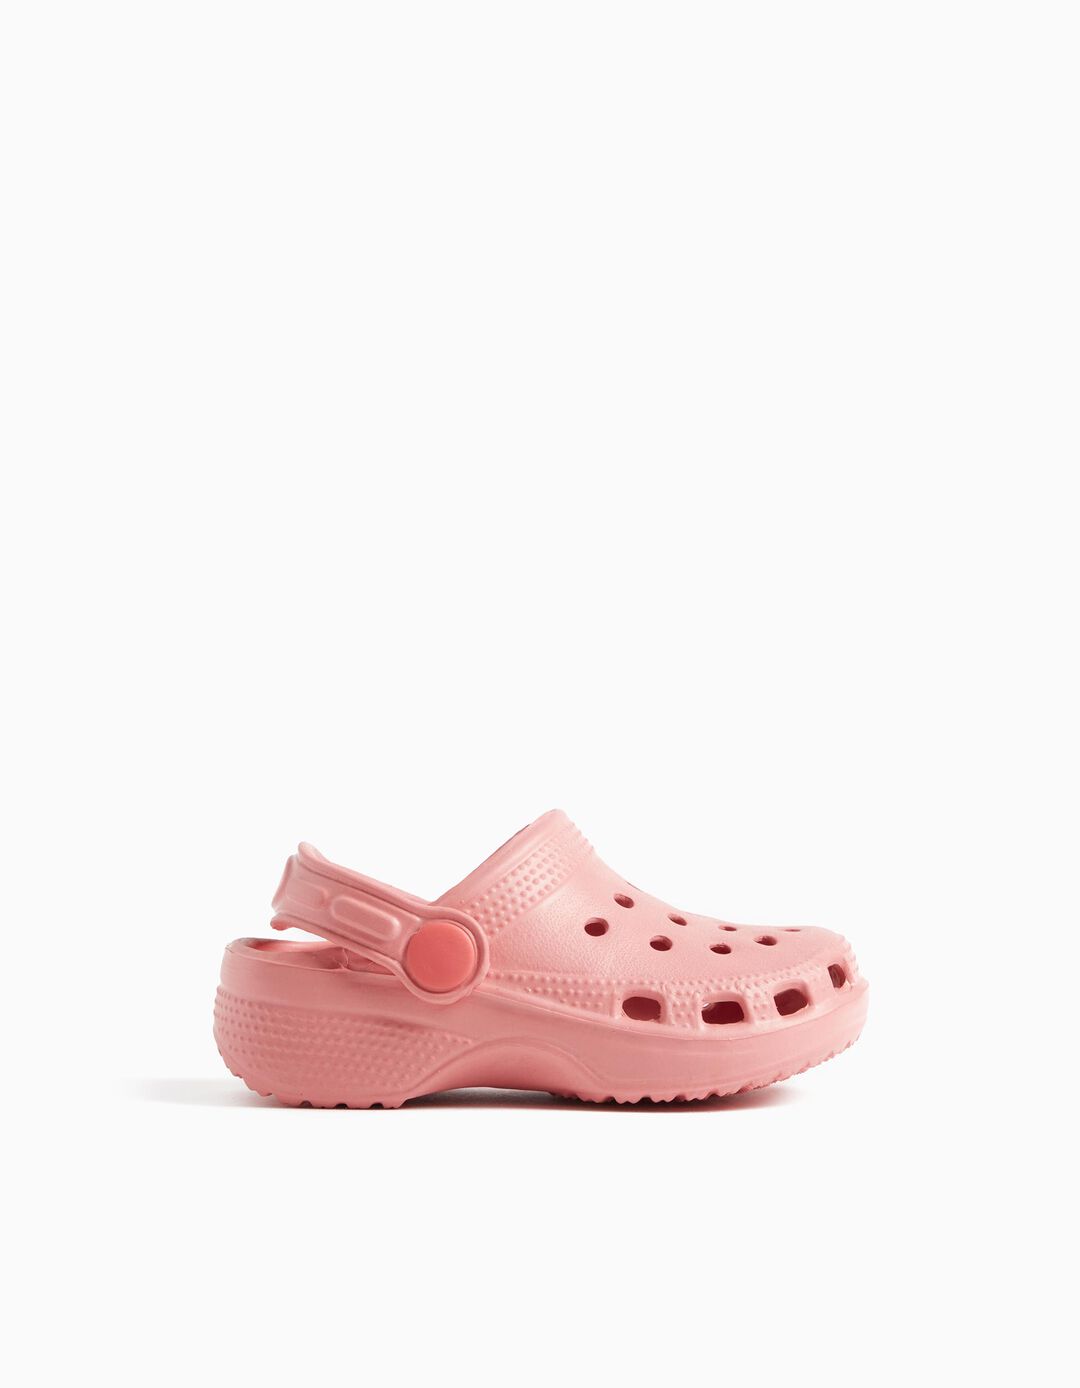 Clogs Sandals, Baby Girls, Light Pink